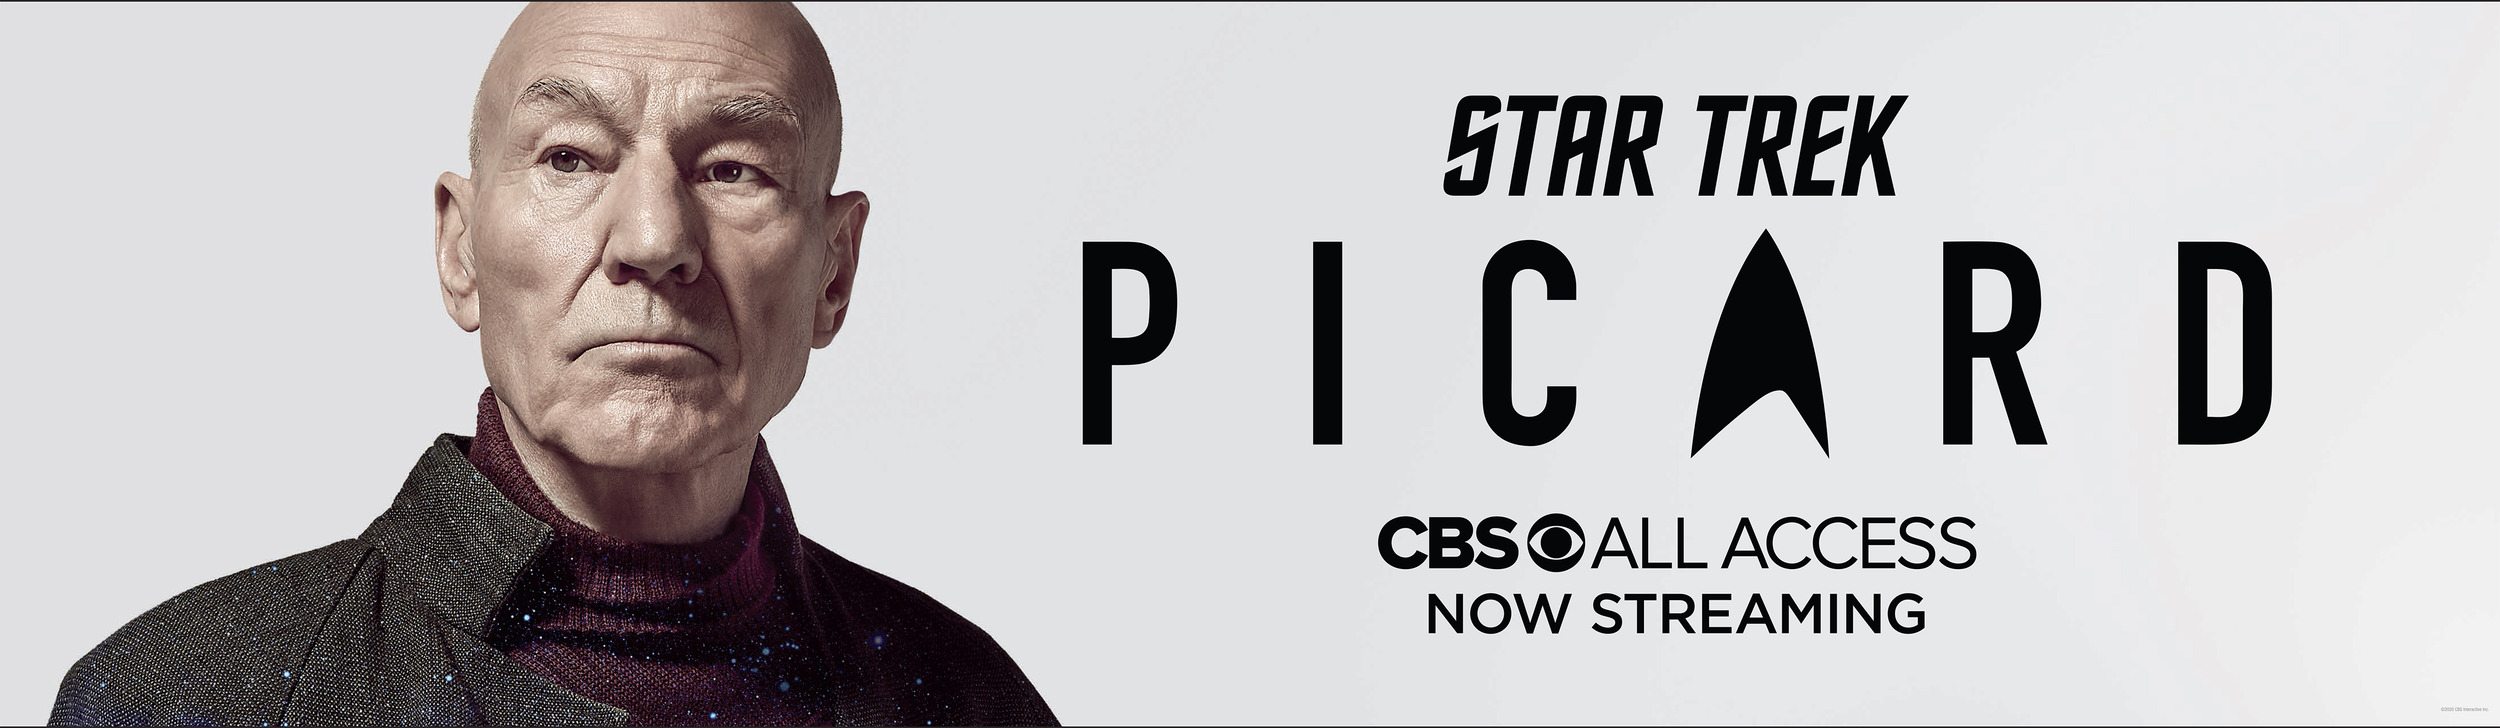 Mega Sized TV Poster Image for Star Trek: Picard (#13 of 26)